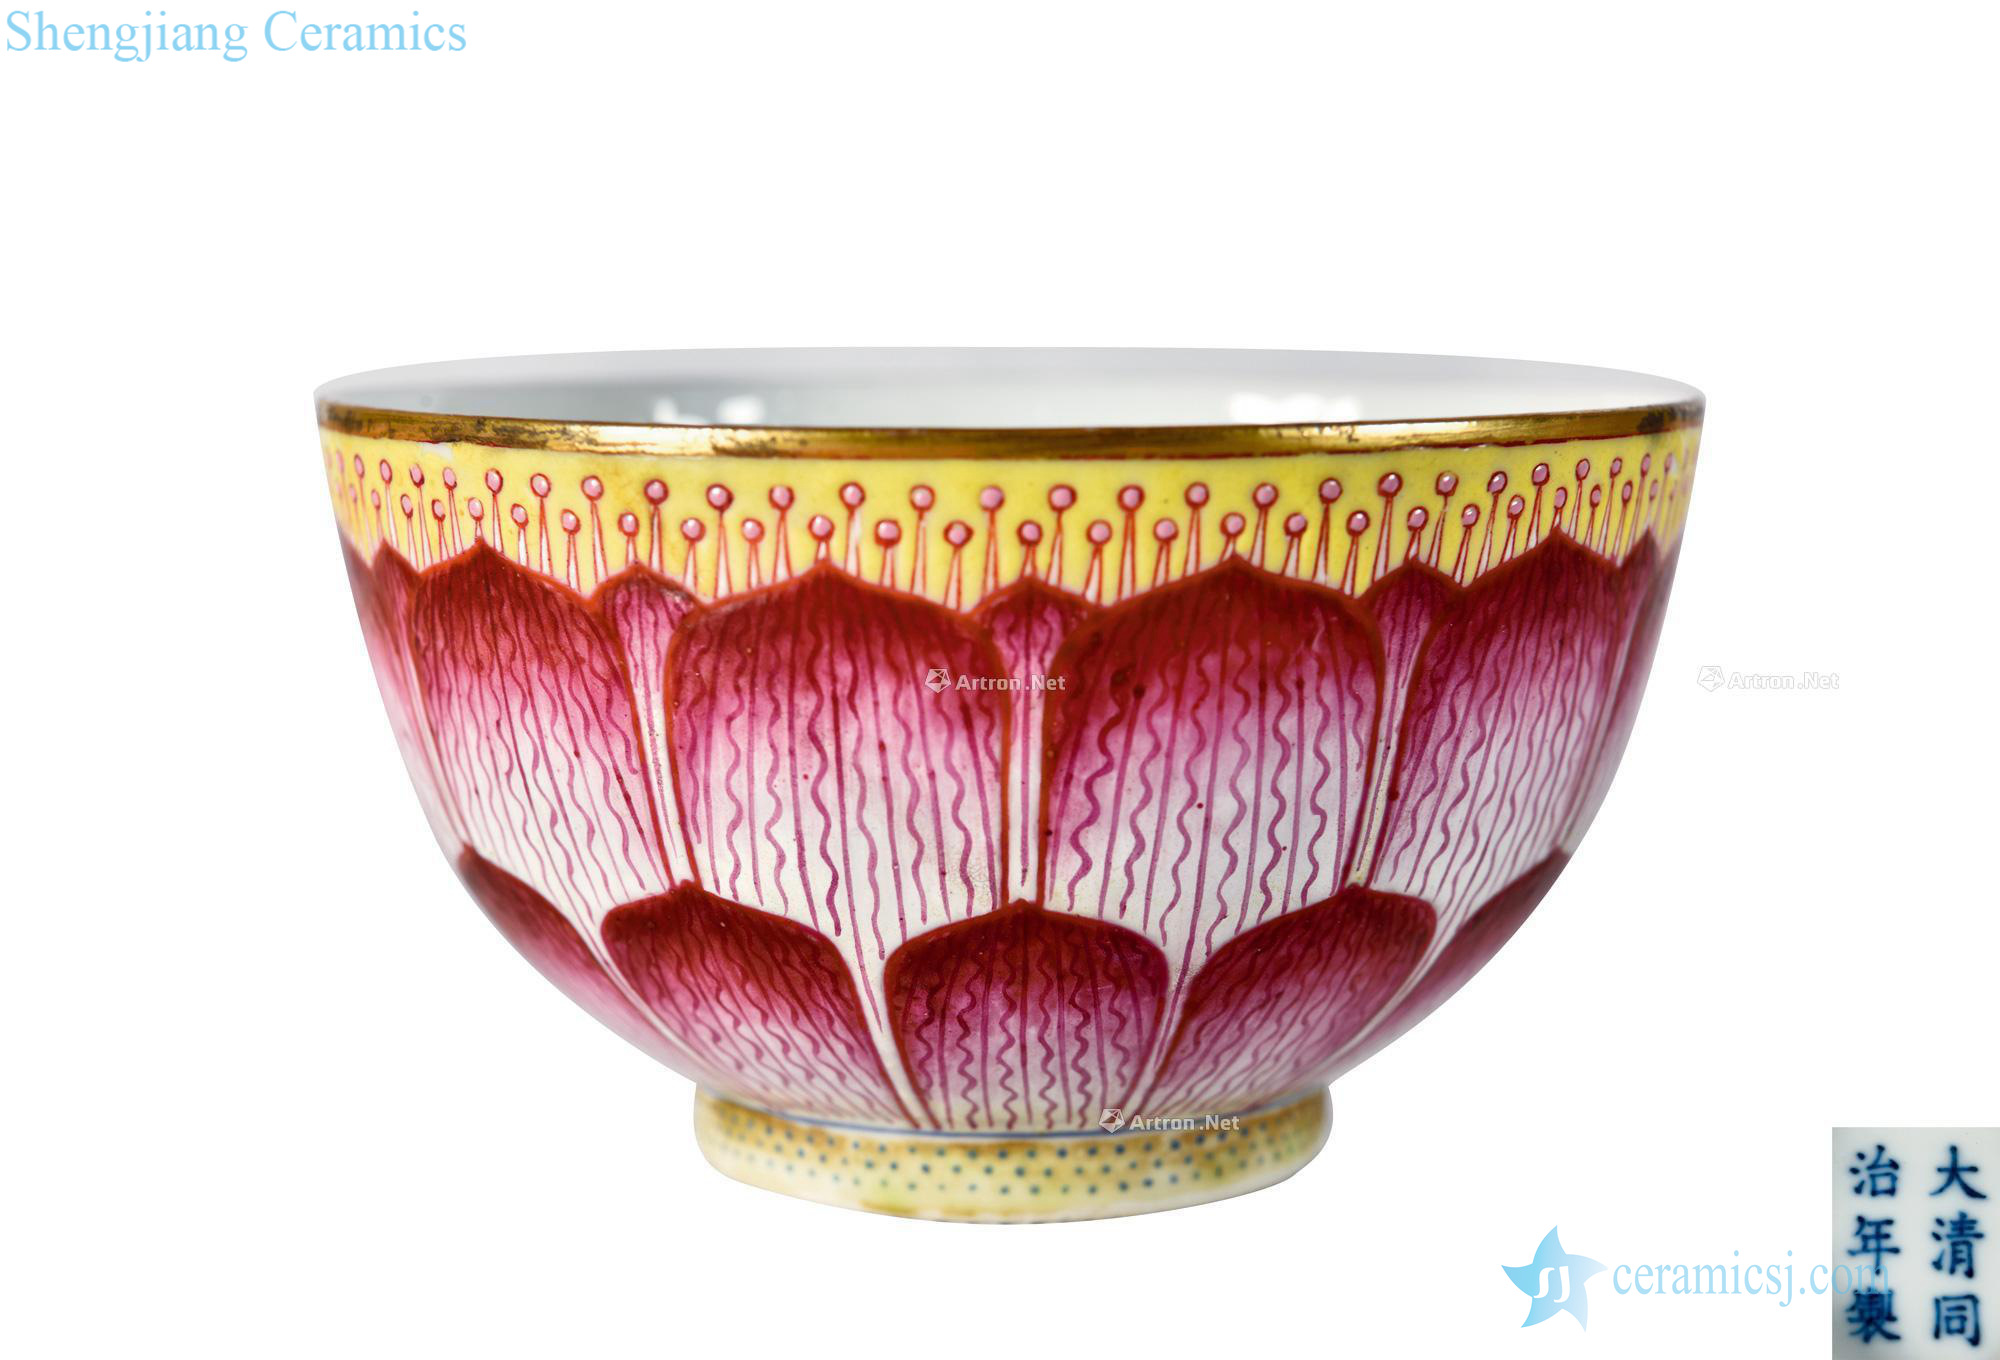 Dajing pastel lotus-shaped bowl